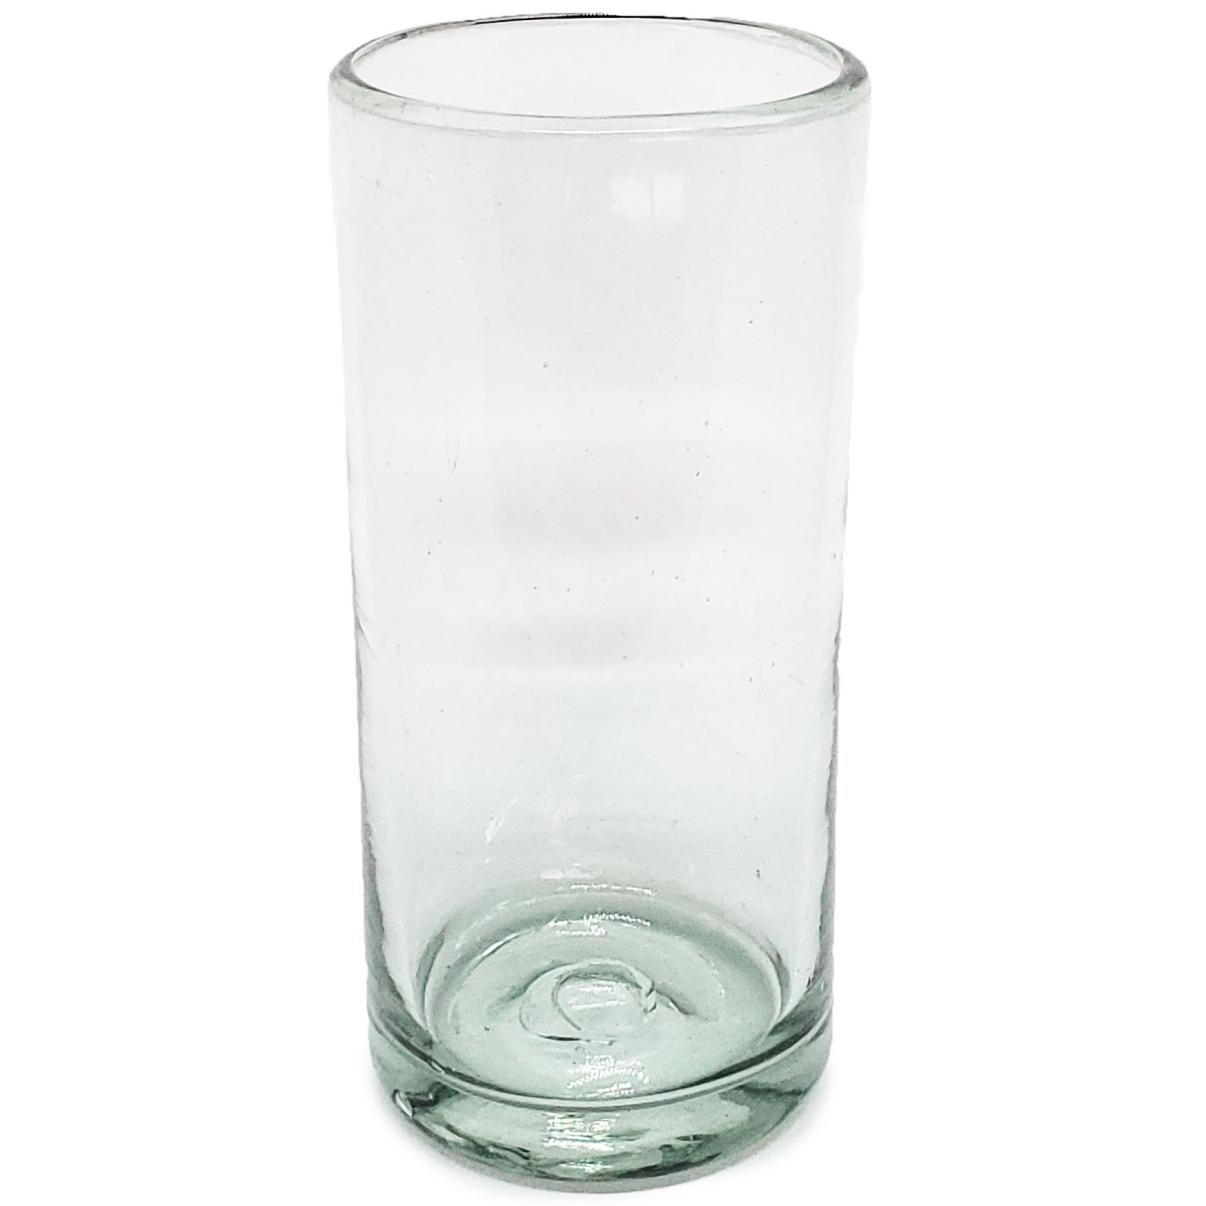 Vasos de Vidrio Soplado al Mayoreo / vasos Jumbo transparentes, 20 oz, Vidrio Reciclado, Libre de Plomo y Toxinas / ste clsico juego de vasos jumbo est hecho con vidrio reciclado. Contiene pequeas burbujas atrapadas en el vaso.